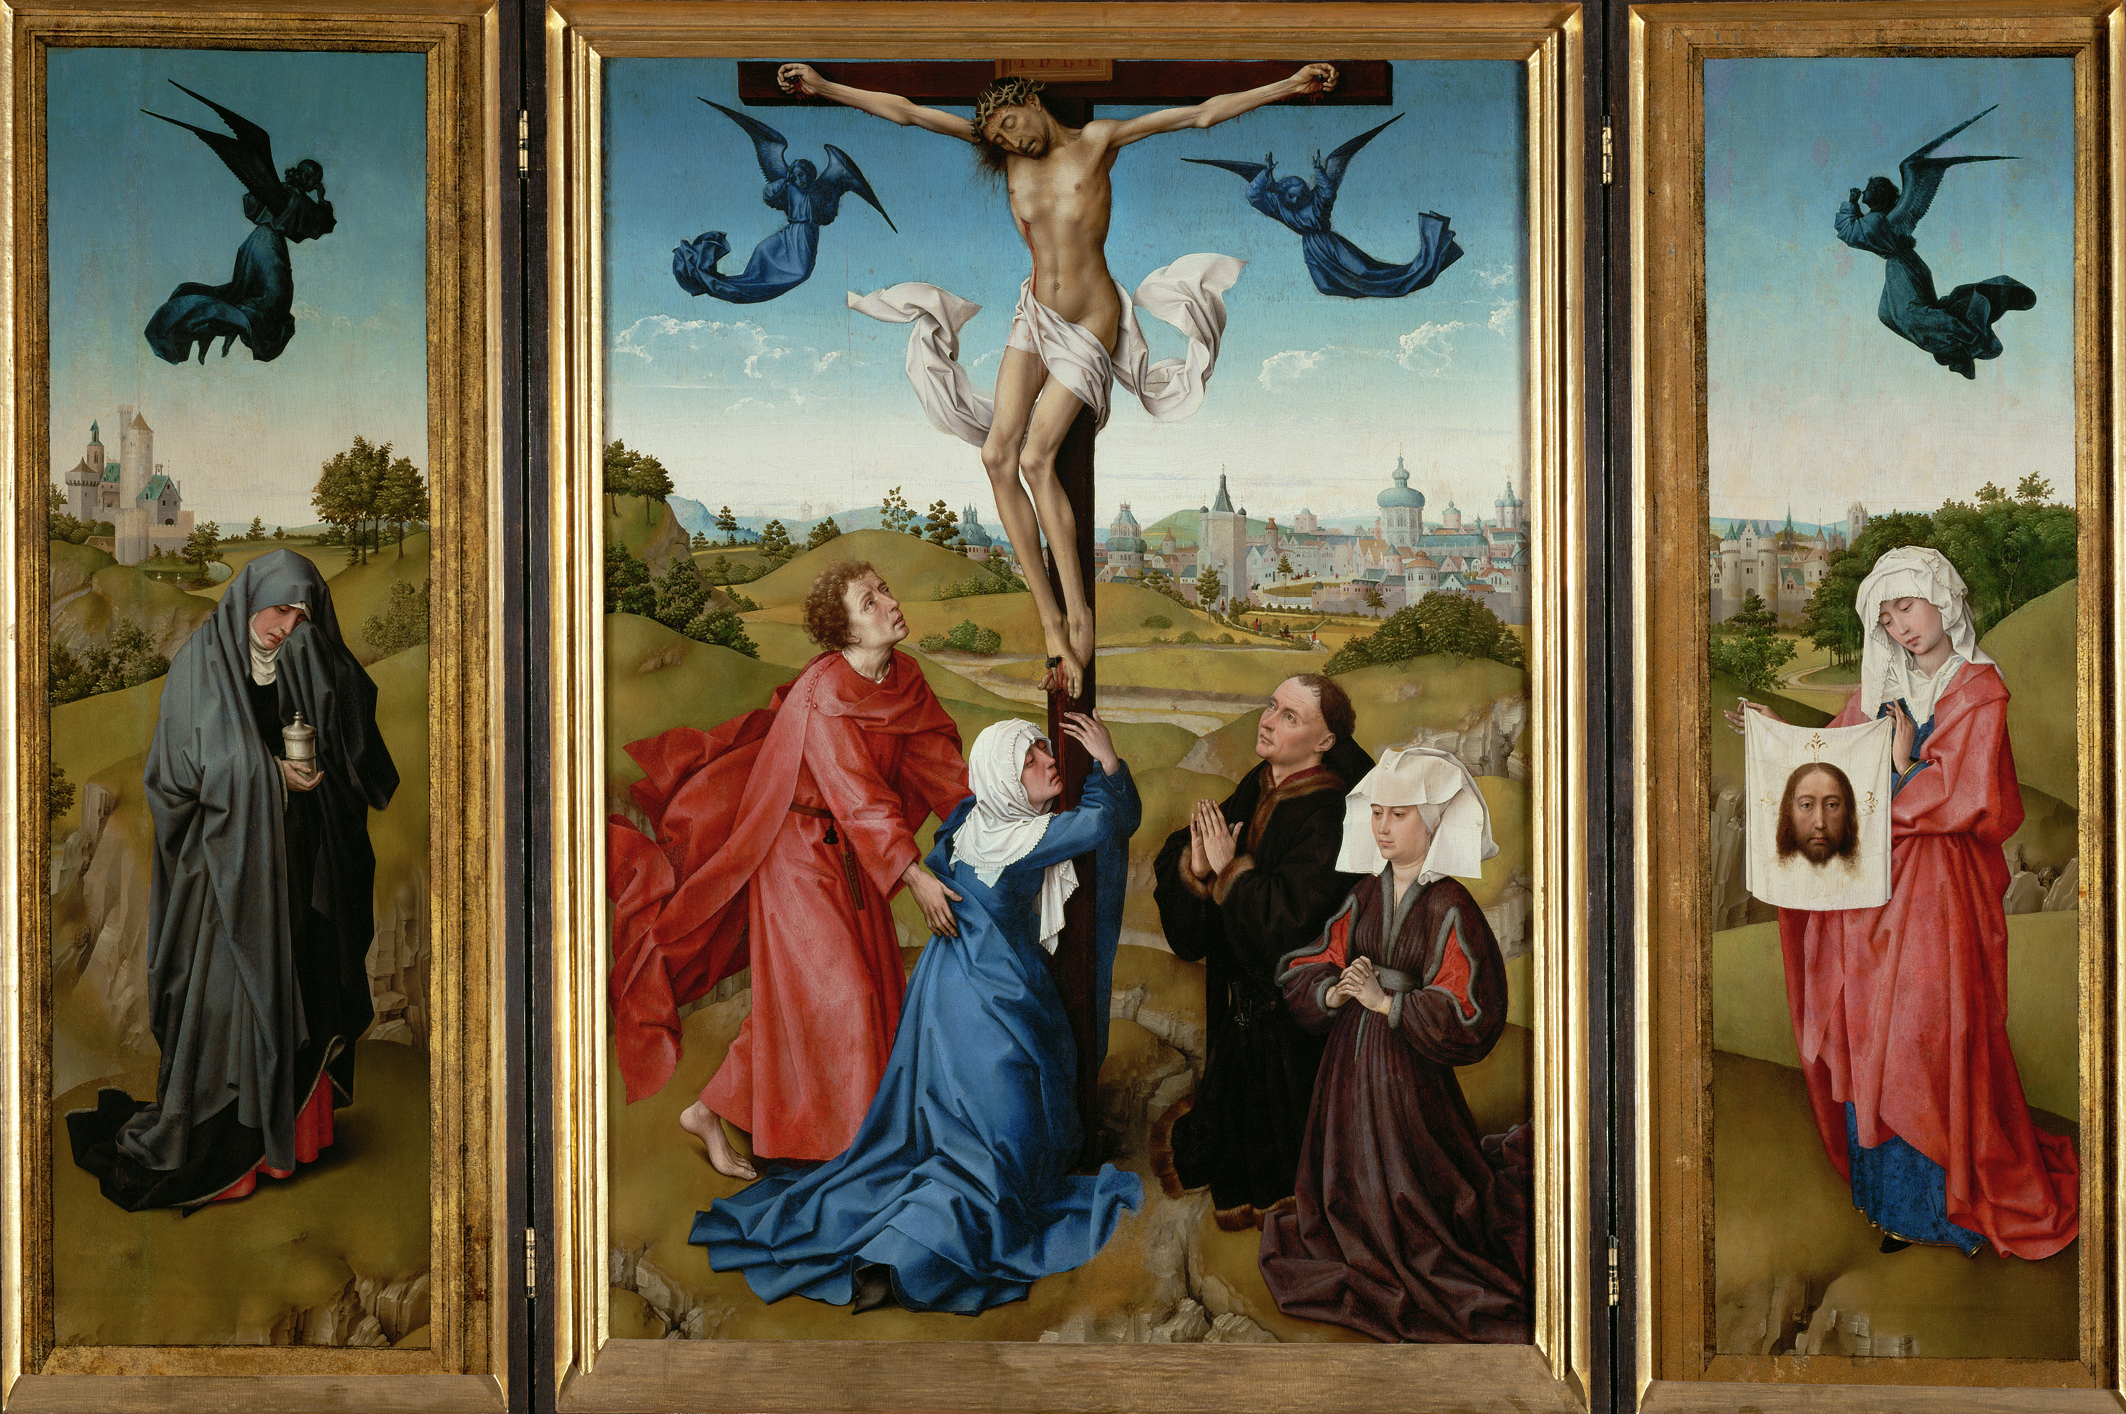 三連祭壇画:十字架刑 by Rogier van der Weyden - 1443/45 - 中央: 96 x 69 cm,両翼: 各101 x 35 cm 